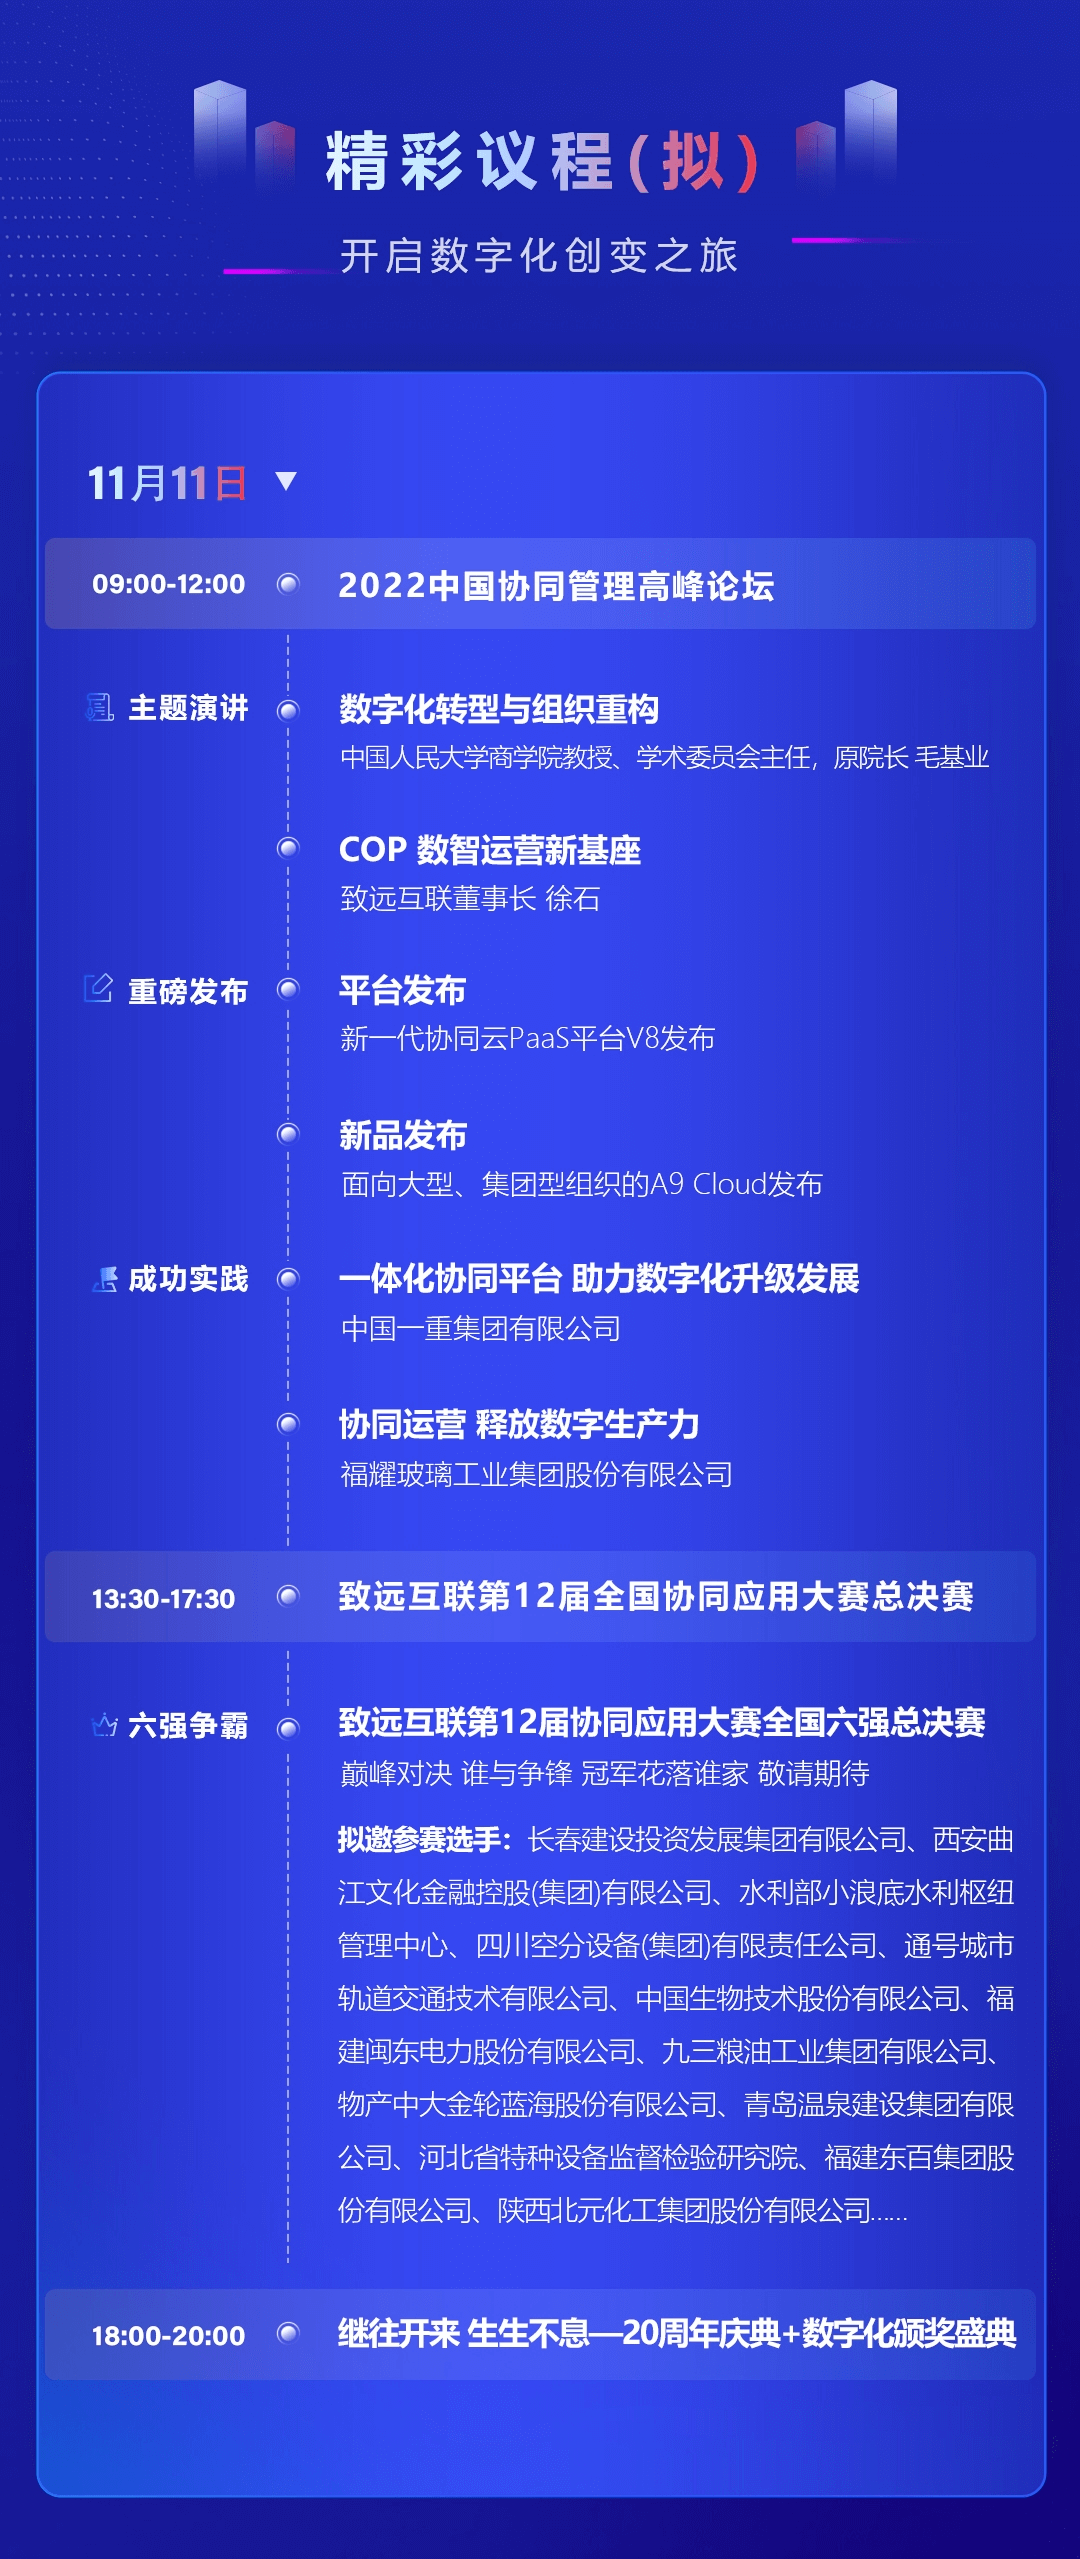 2022中国协同管理高峰论坛暨致远互联第12届用户大会【COP数智运营新基座】